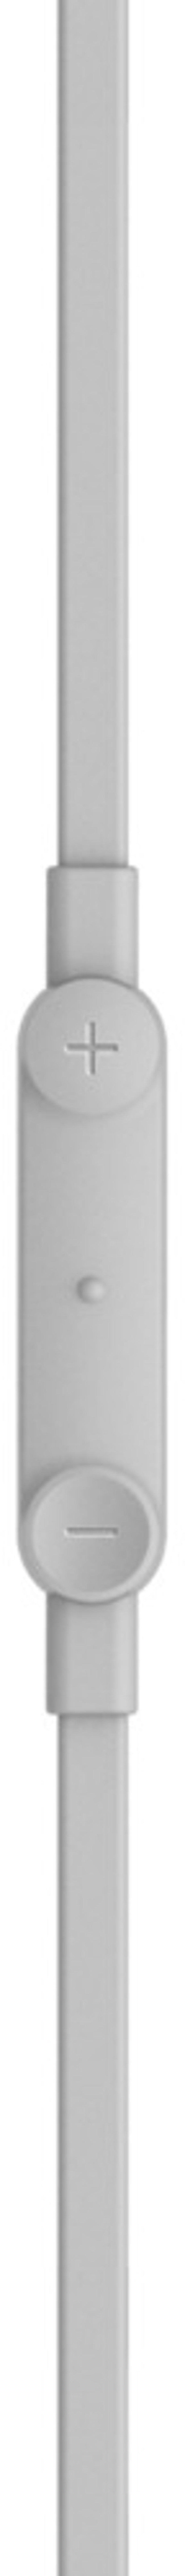 Belkin Earphones USB-C With Mic In-ear Kuulokkeet USB-C Stereo Valkoinen